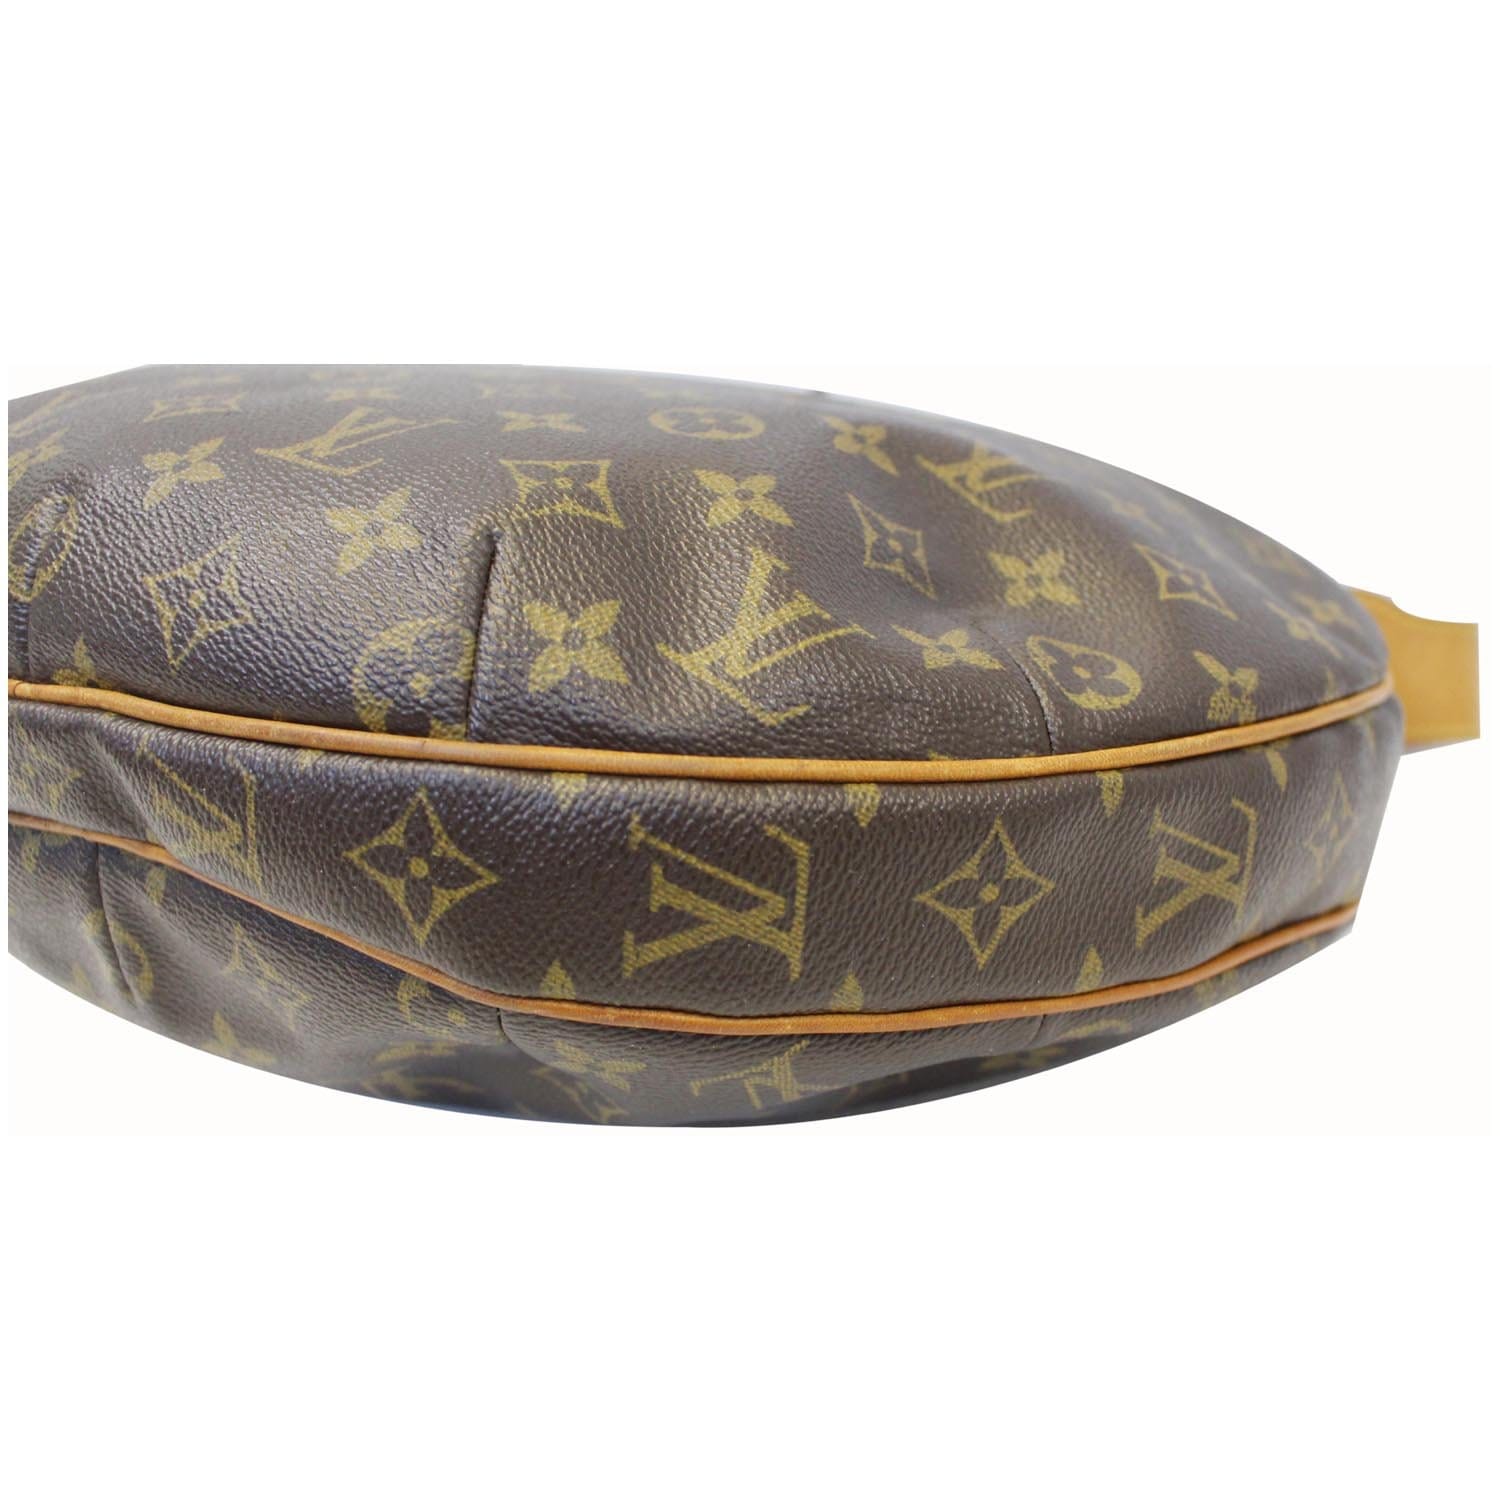 Louis Vuitton Croissant GM Monogram Shoulder Bag